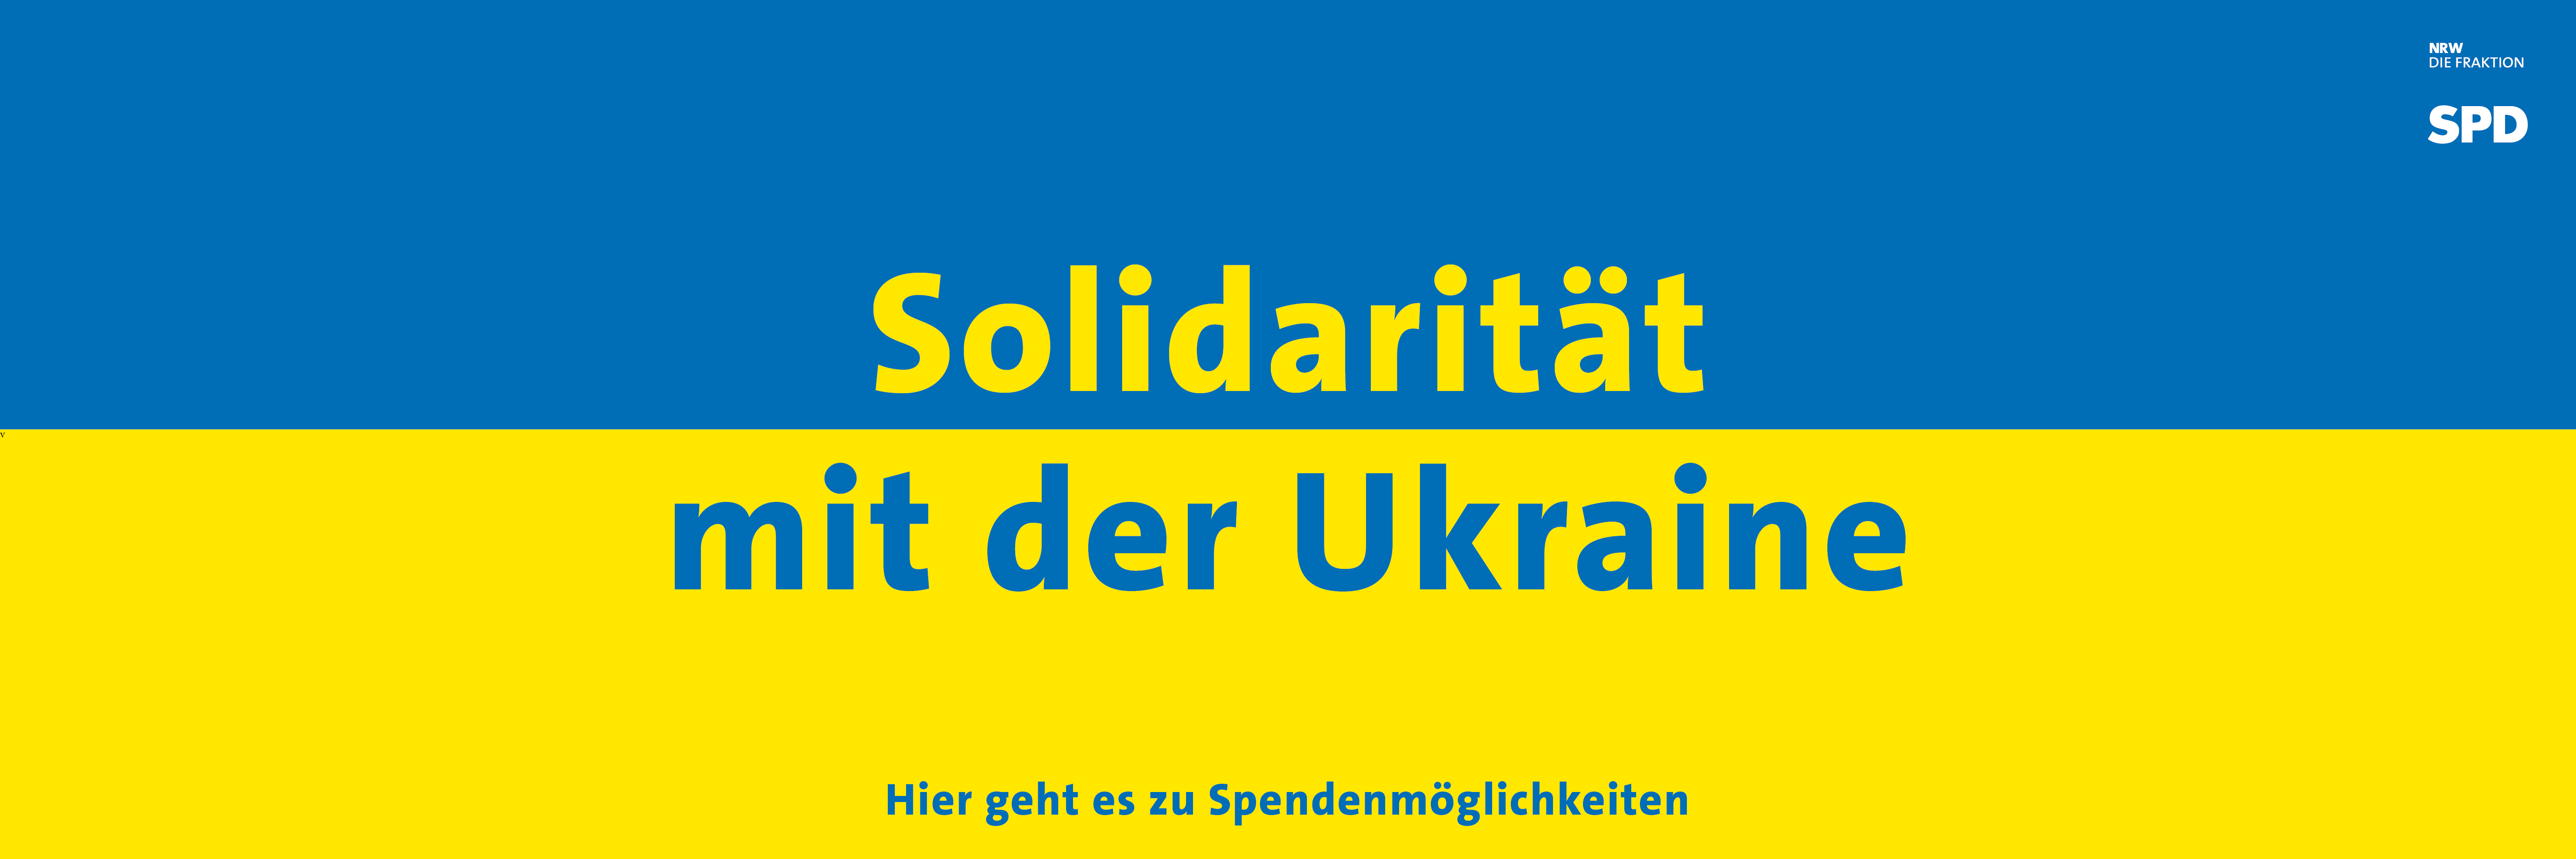 Solidarität mit der Ukraine.